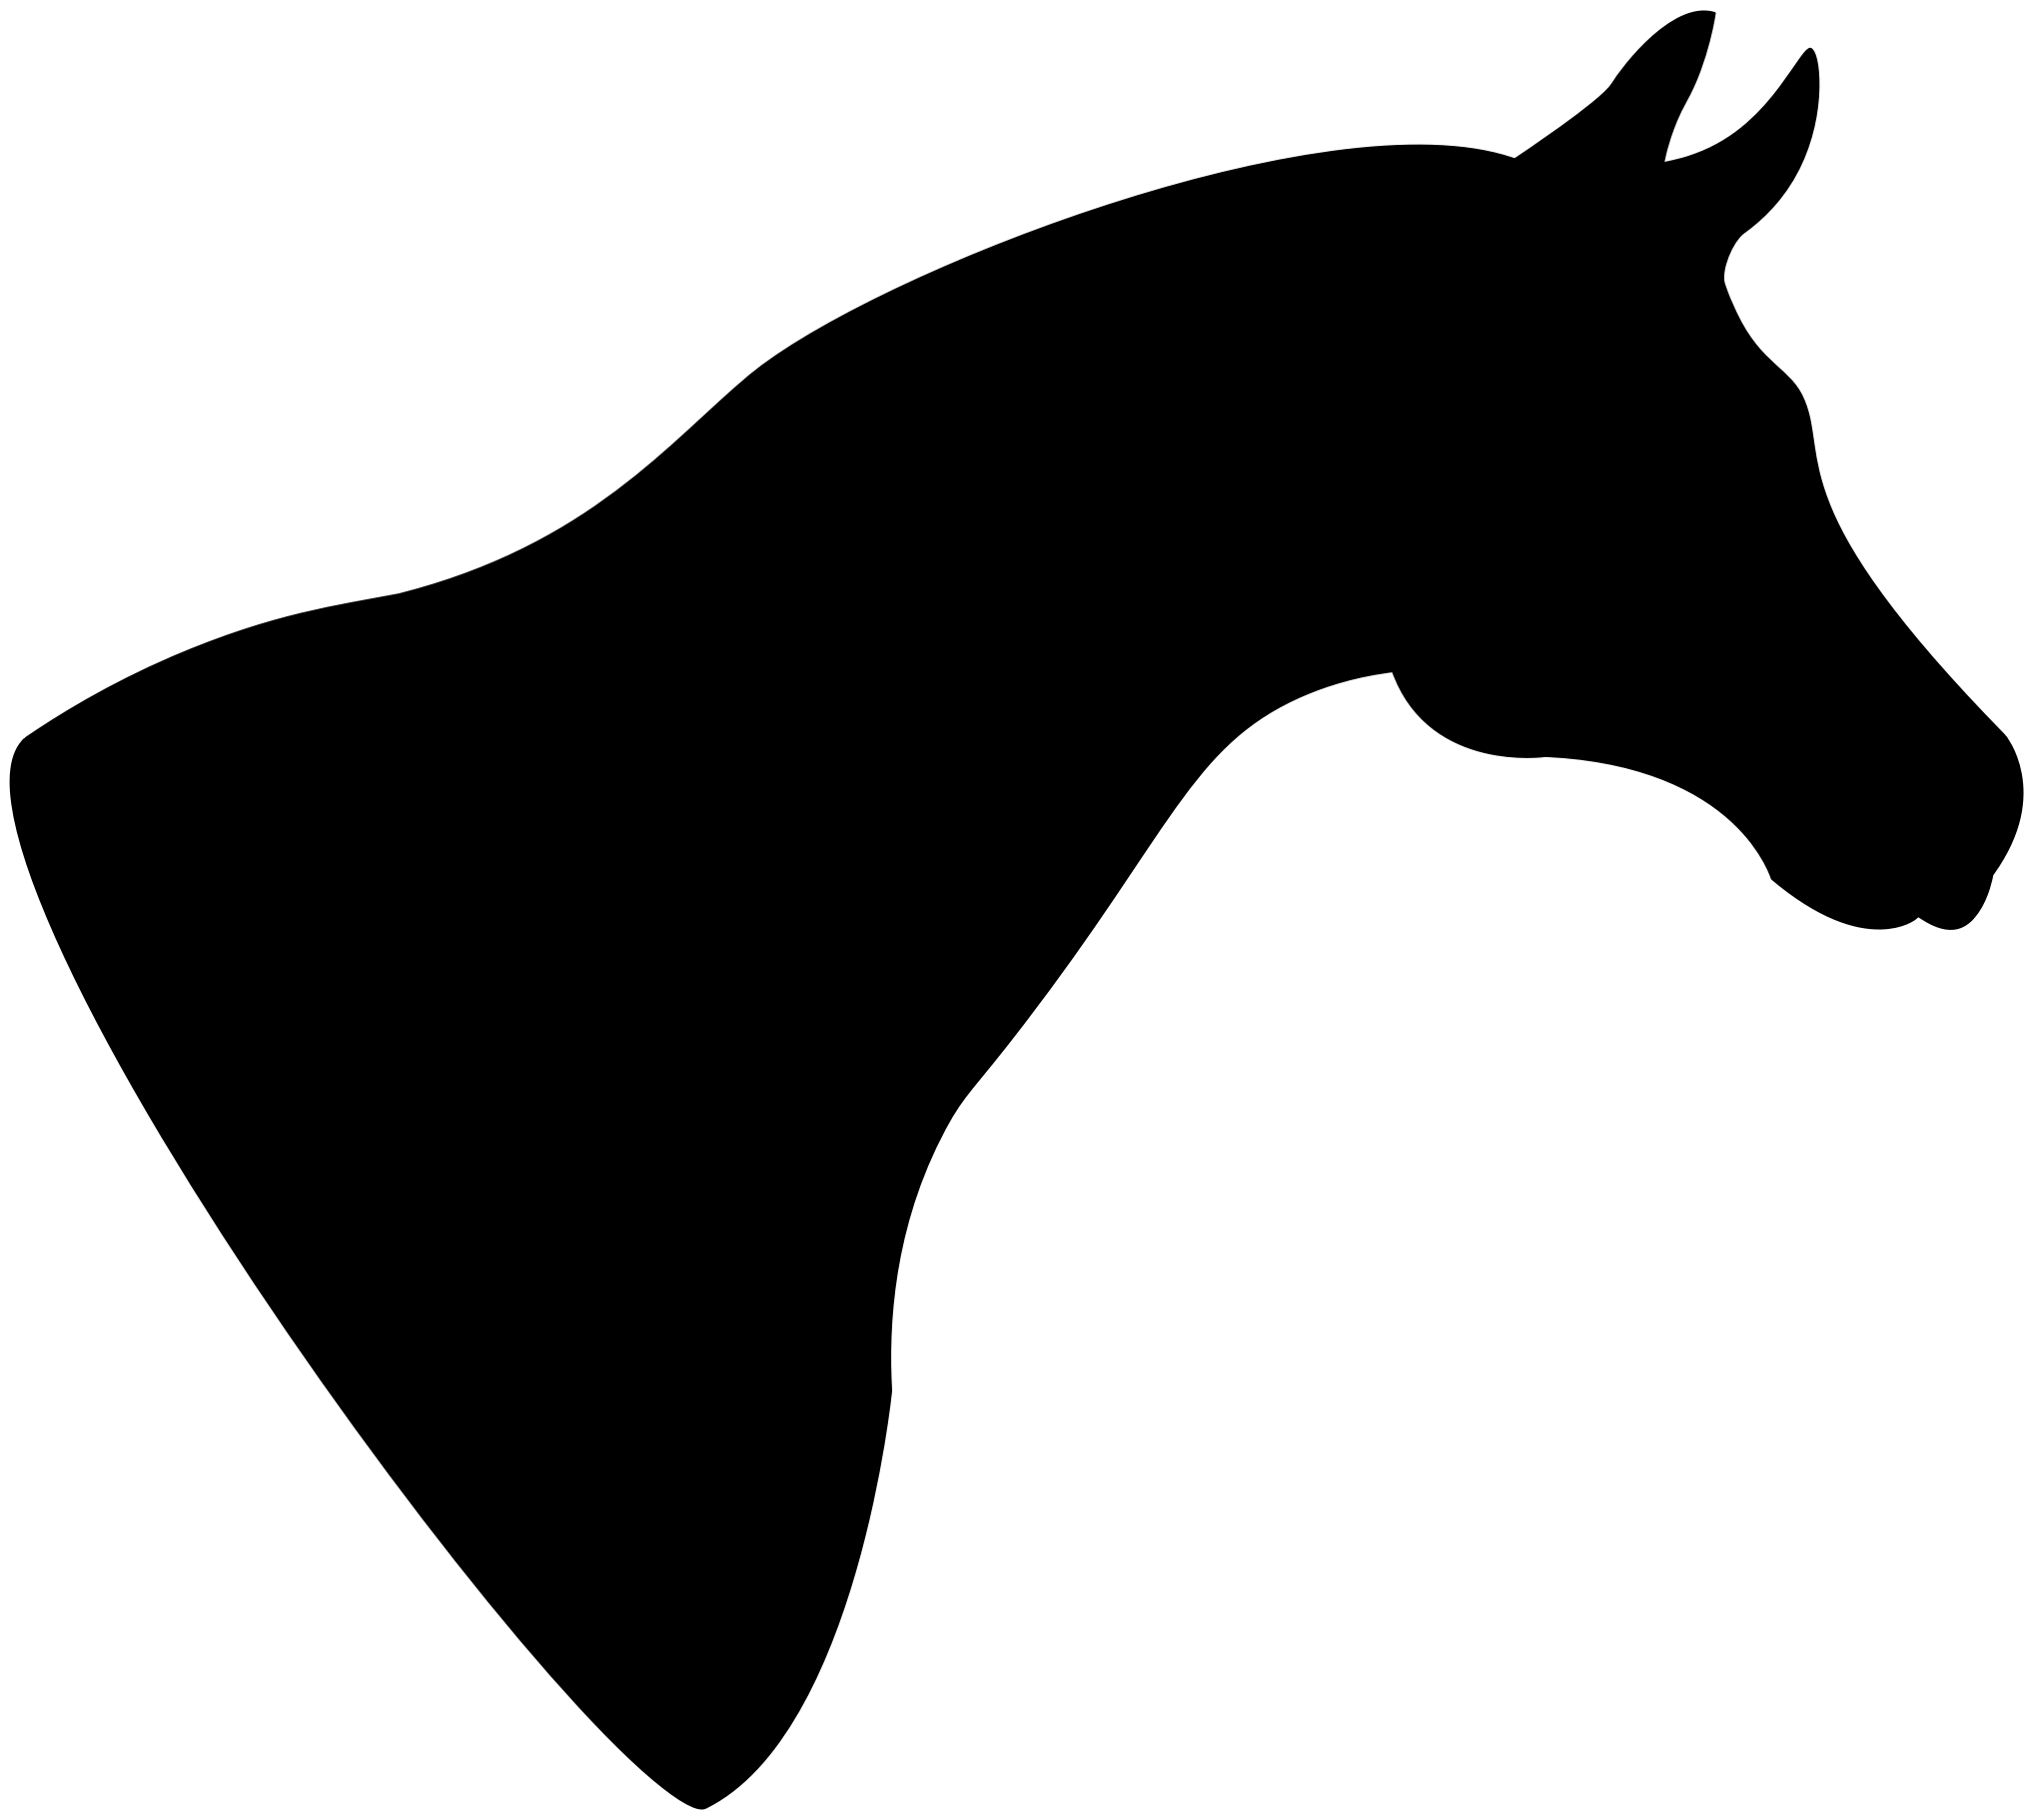 Clipart horse head silhouette